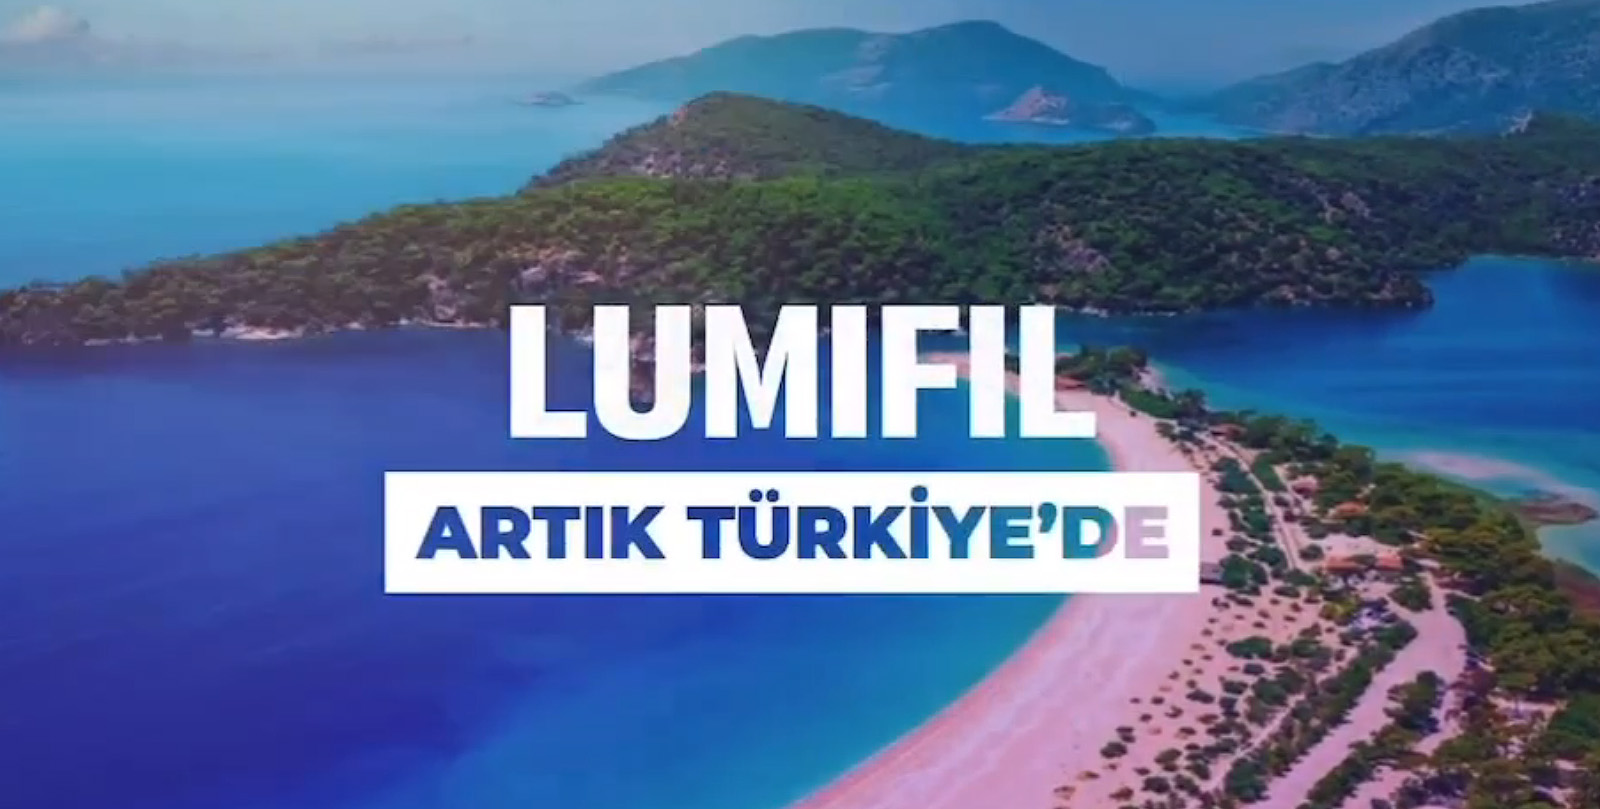 Lumifil in Turkey